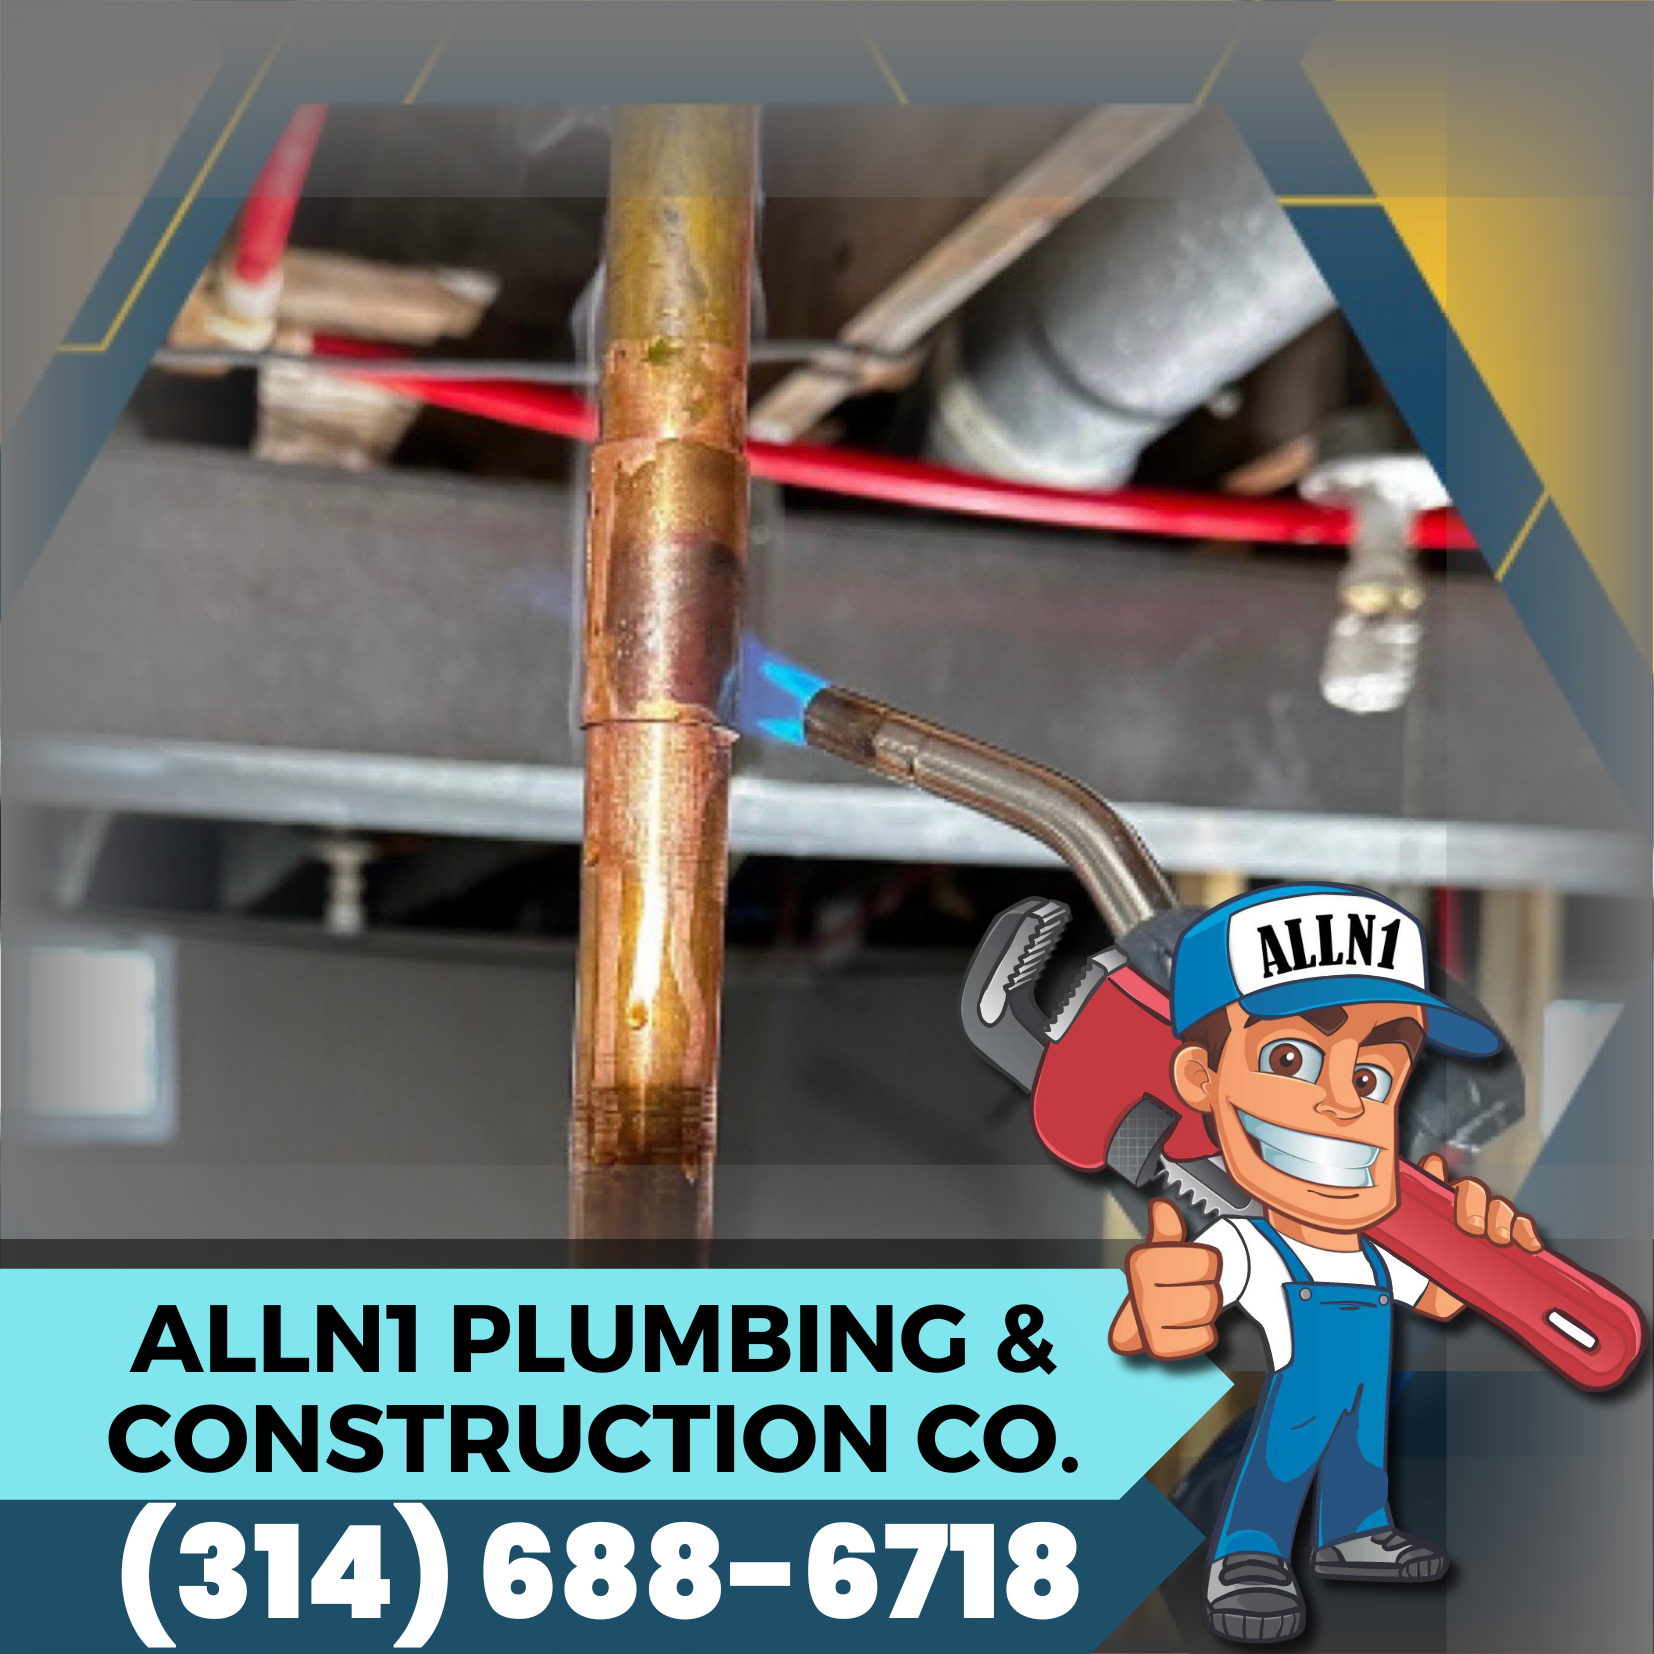 ALLN1 Plumbing & Construction Co.